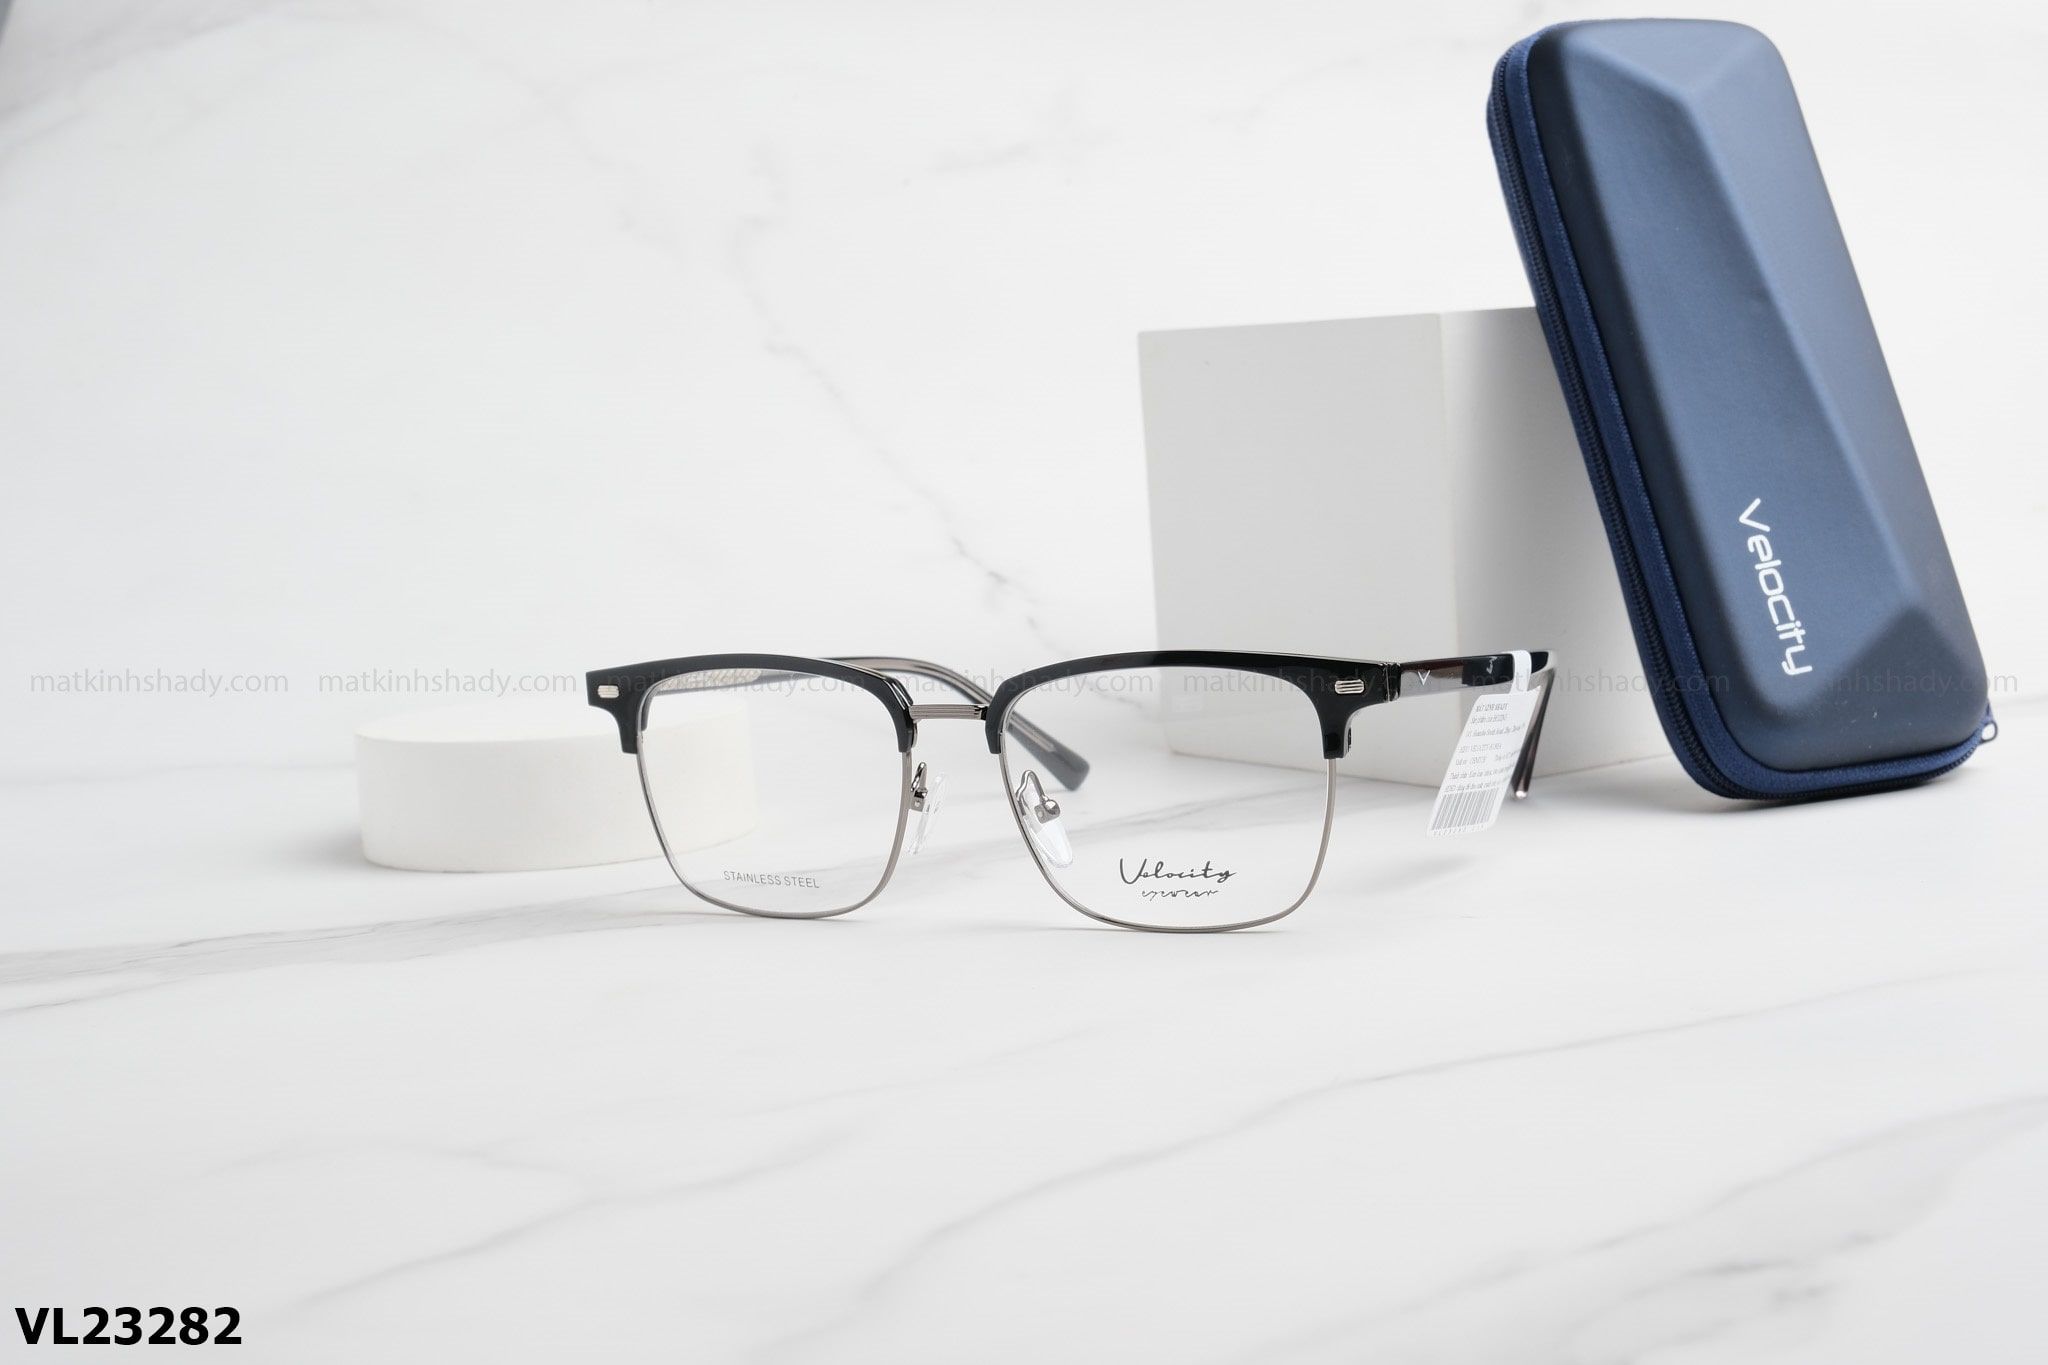  Velocity Eyewear - Glasses - VL23282 